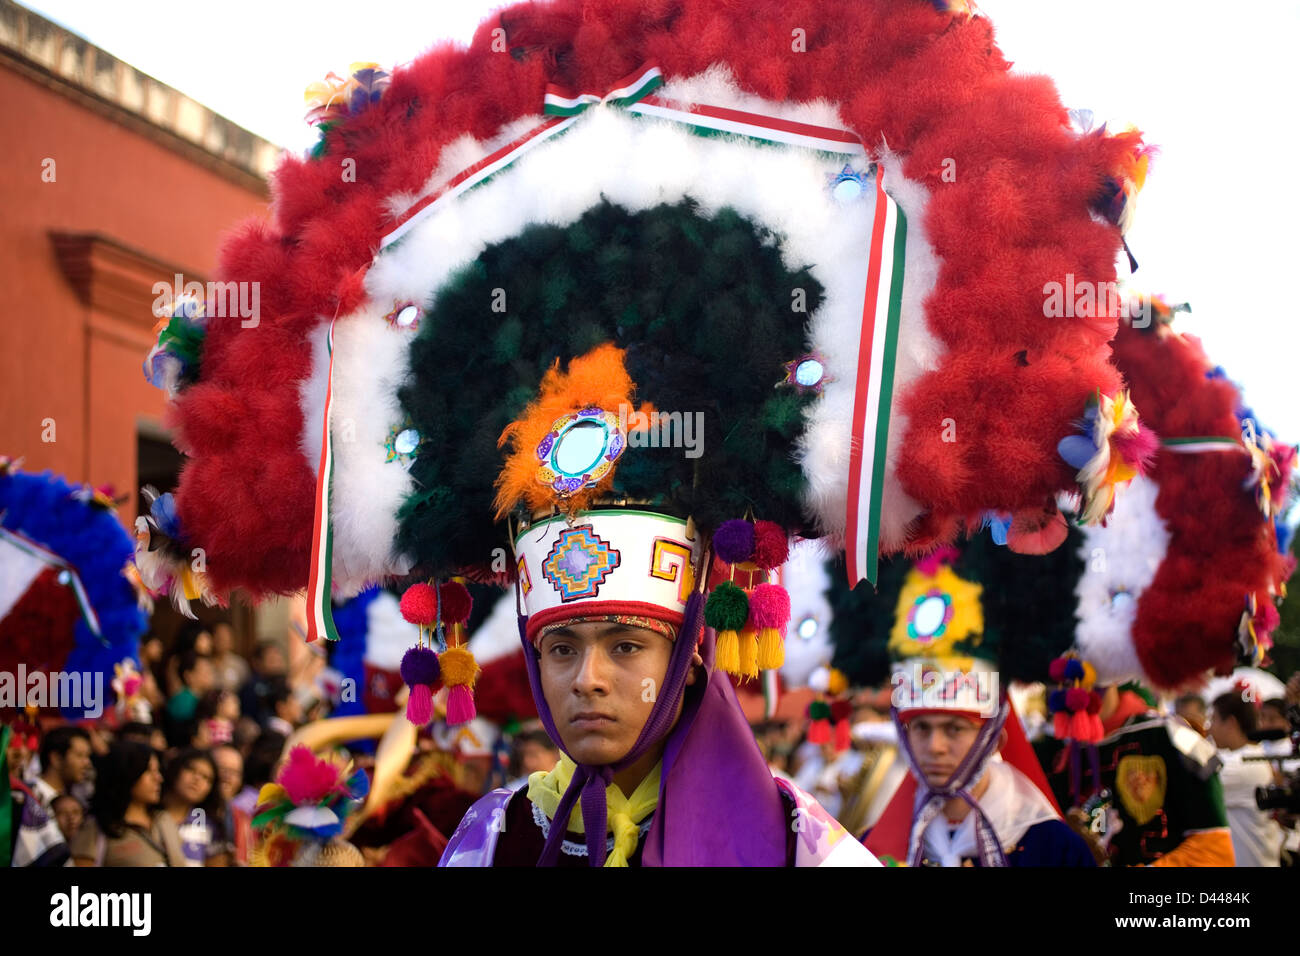 A dancer performs the Dance of the Feather or Danza de la Pluma during the Guelaguetza parade in Oaxaca, Mexico. Stock Photo